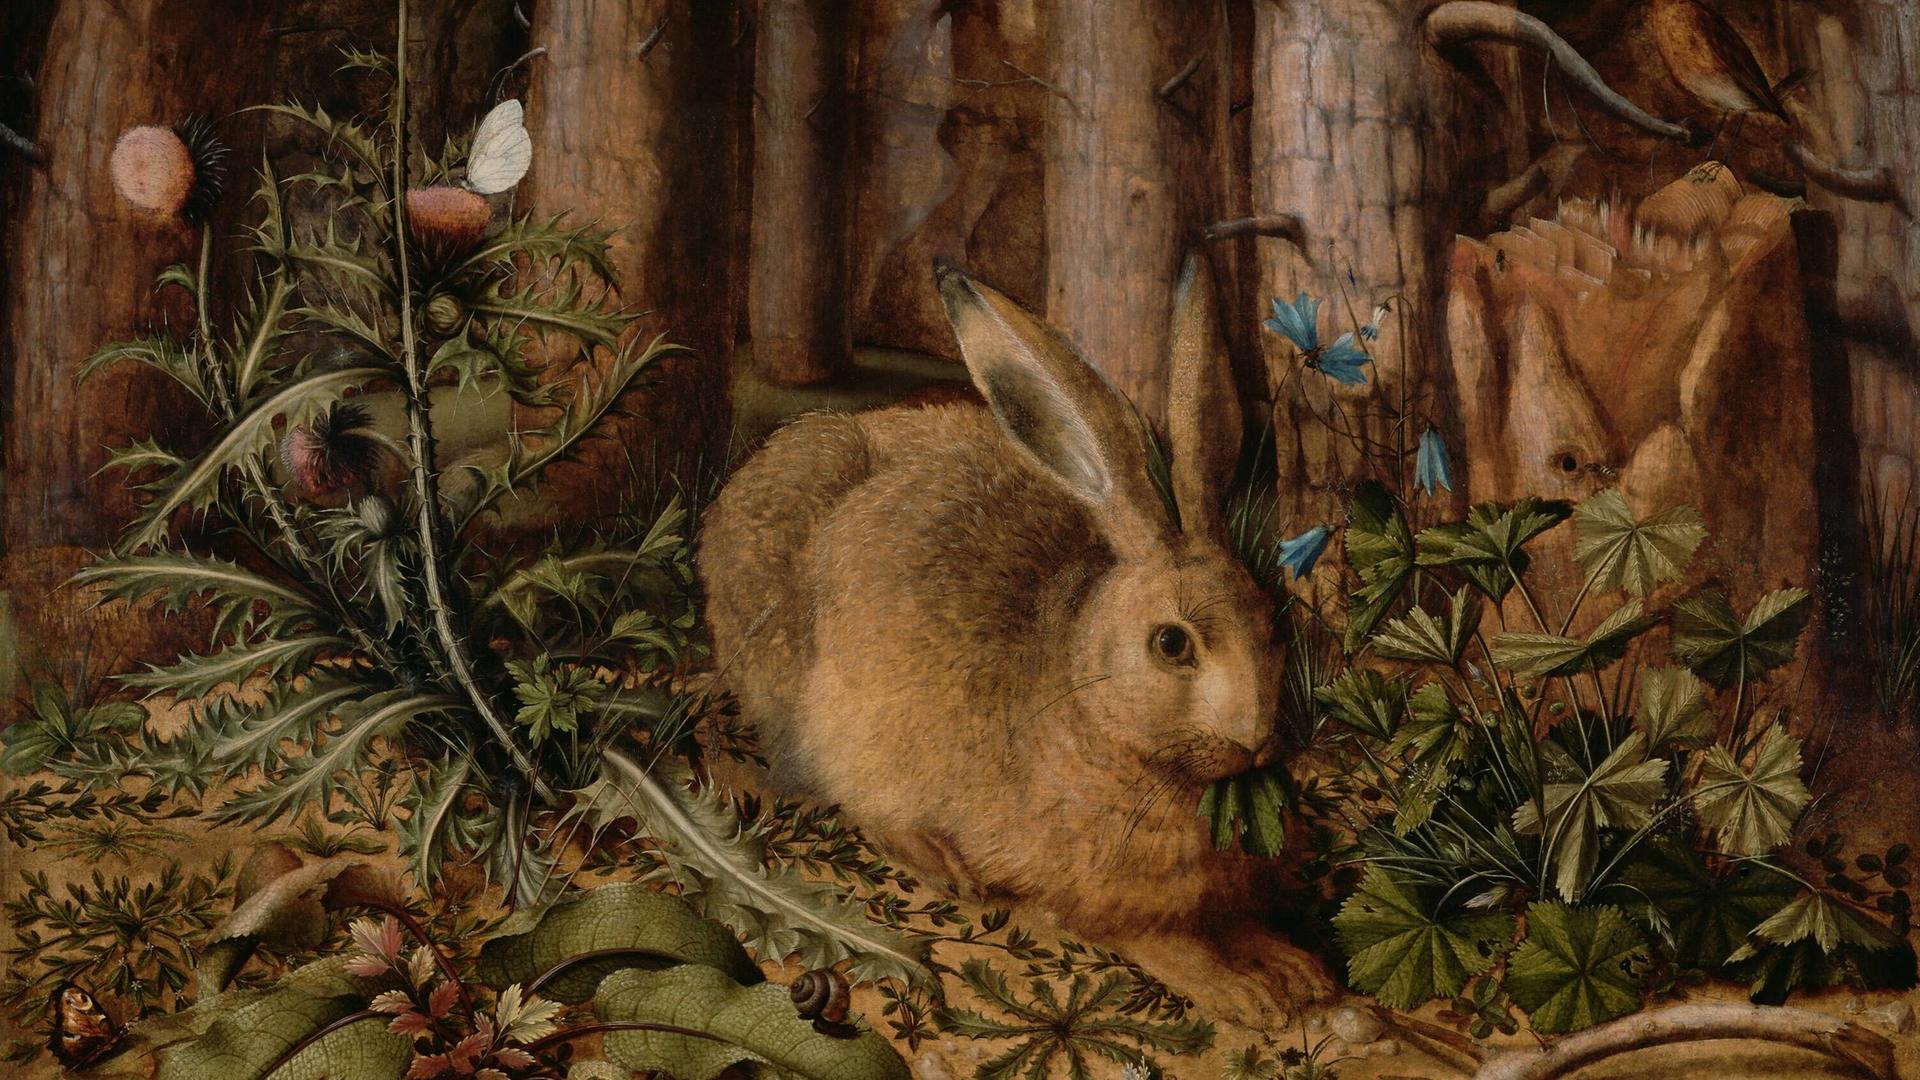 Reproduktion eines Öl-Gemäldes von 1585: Ein Hase im Wald, von Hans Hoffmann, um 1585, deutsches Gemälde, Öl auf Tafel. Minutiöses Gemälde eines Hasen, hockend auf einem Waldboden. Baumstämme und Pflanzen wie Disteln und Blumen sind akribisch wiedergegeben.
